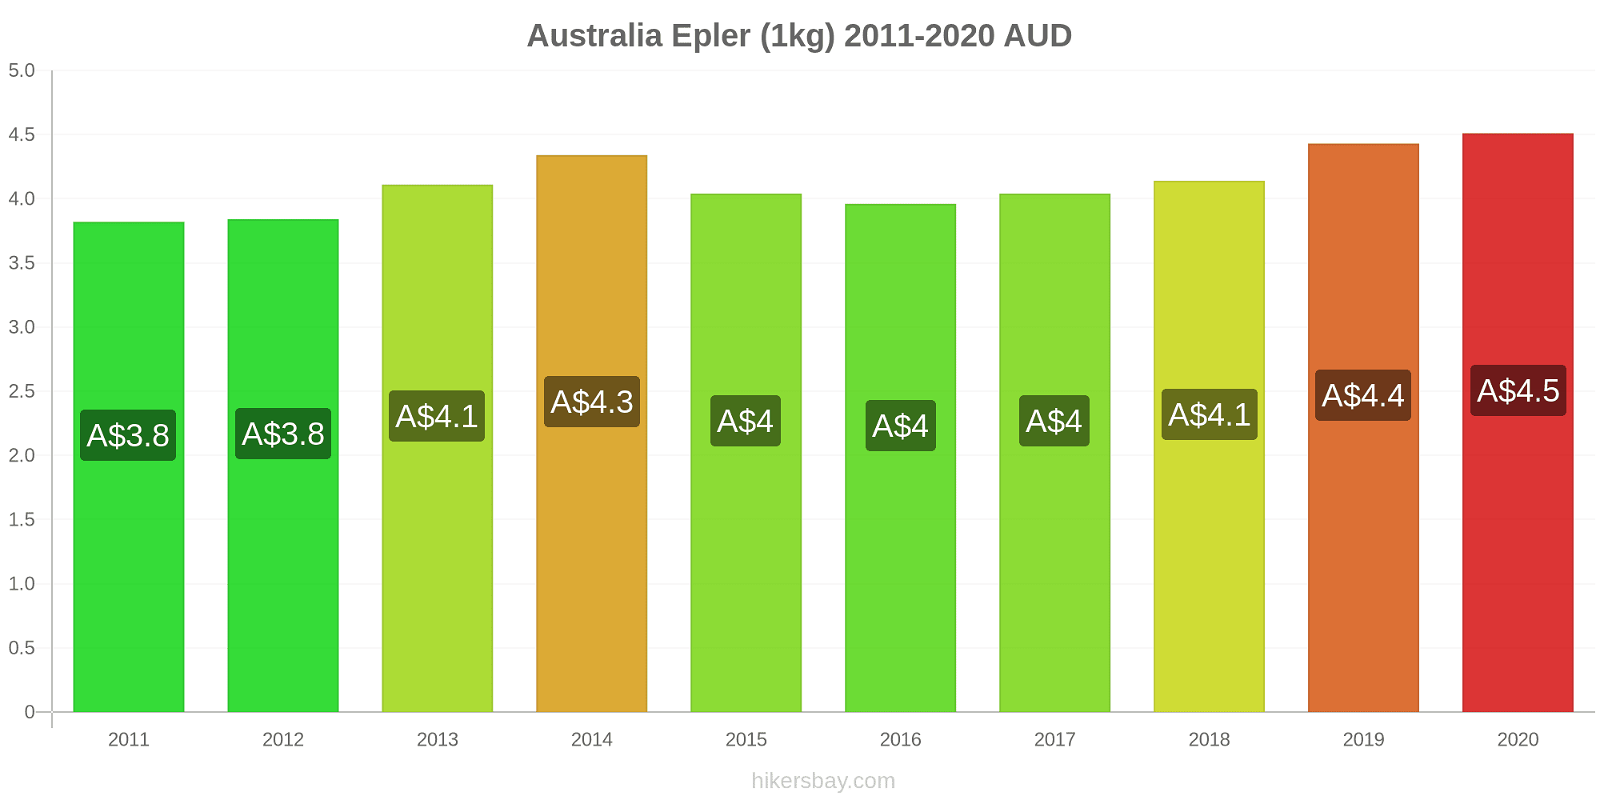 Australia prisendringer Epler (1kg) hikersbay.com